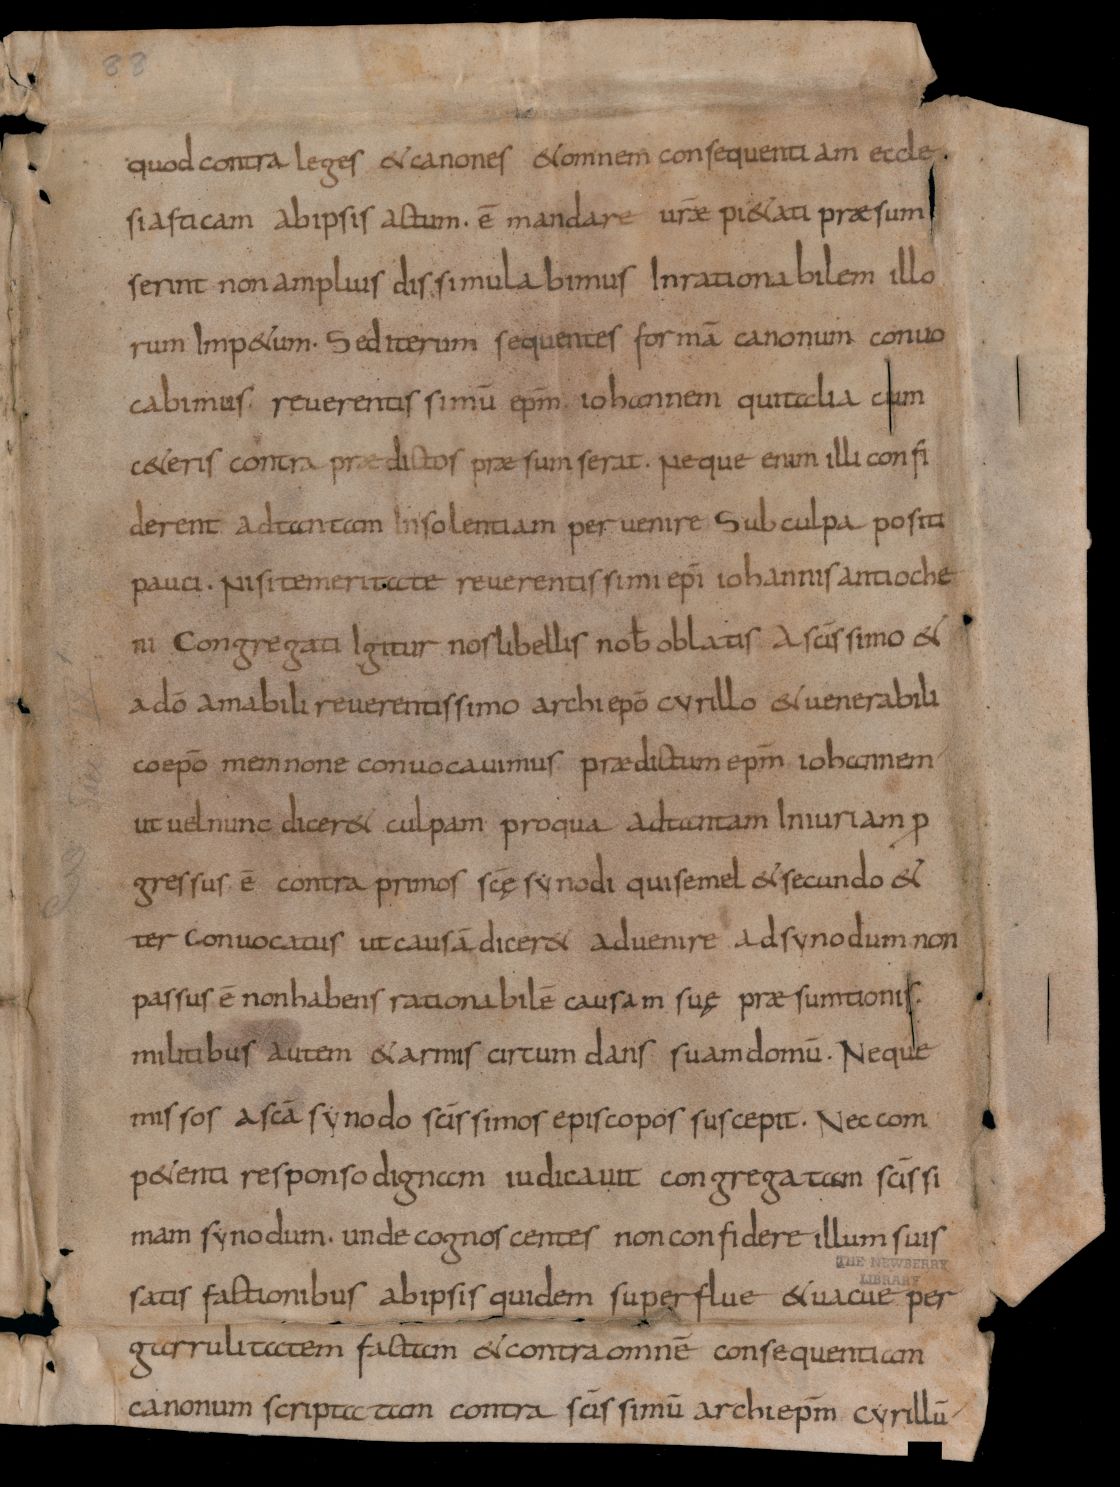 [sine loco], codices restituti, Cod. 6 (Concilium Ephesinum, Fragment), f. Chicago_Ir – Concilium Ephesinum (fragment)